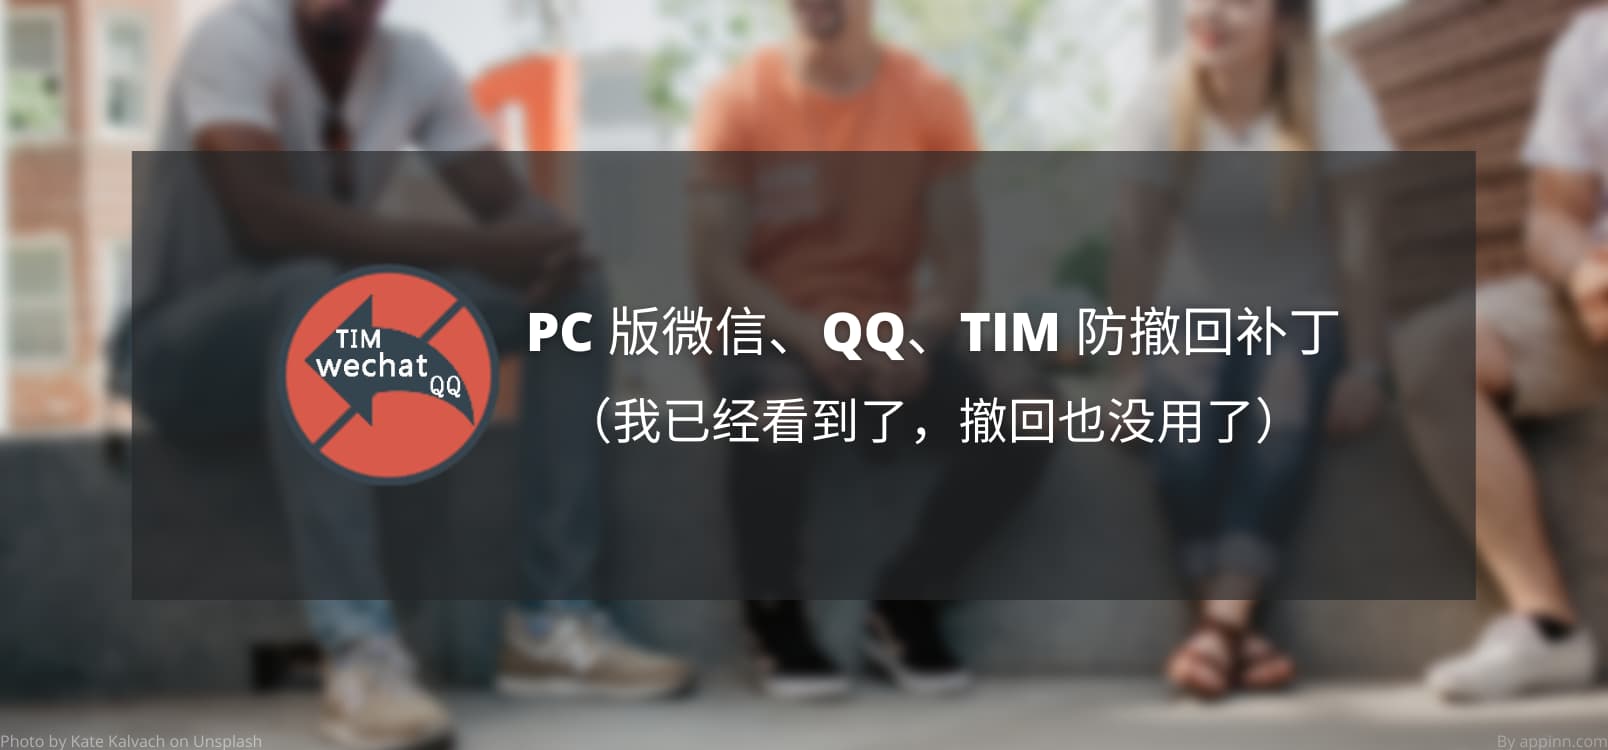 PC 版微信、QQ、TIM 防撤回补丁[Windows]